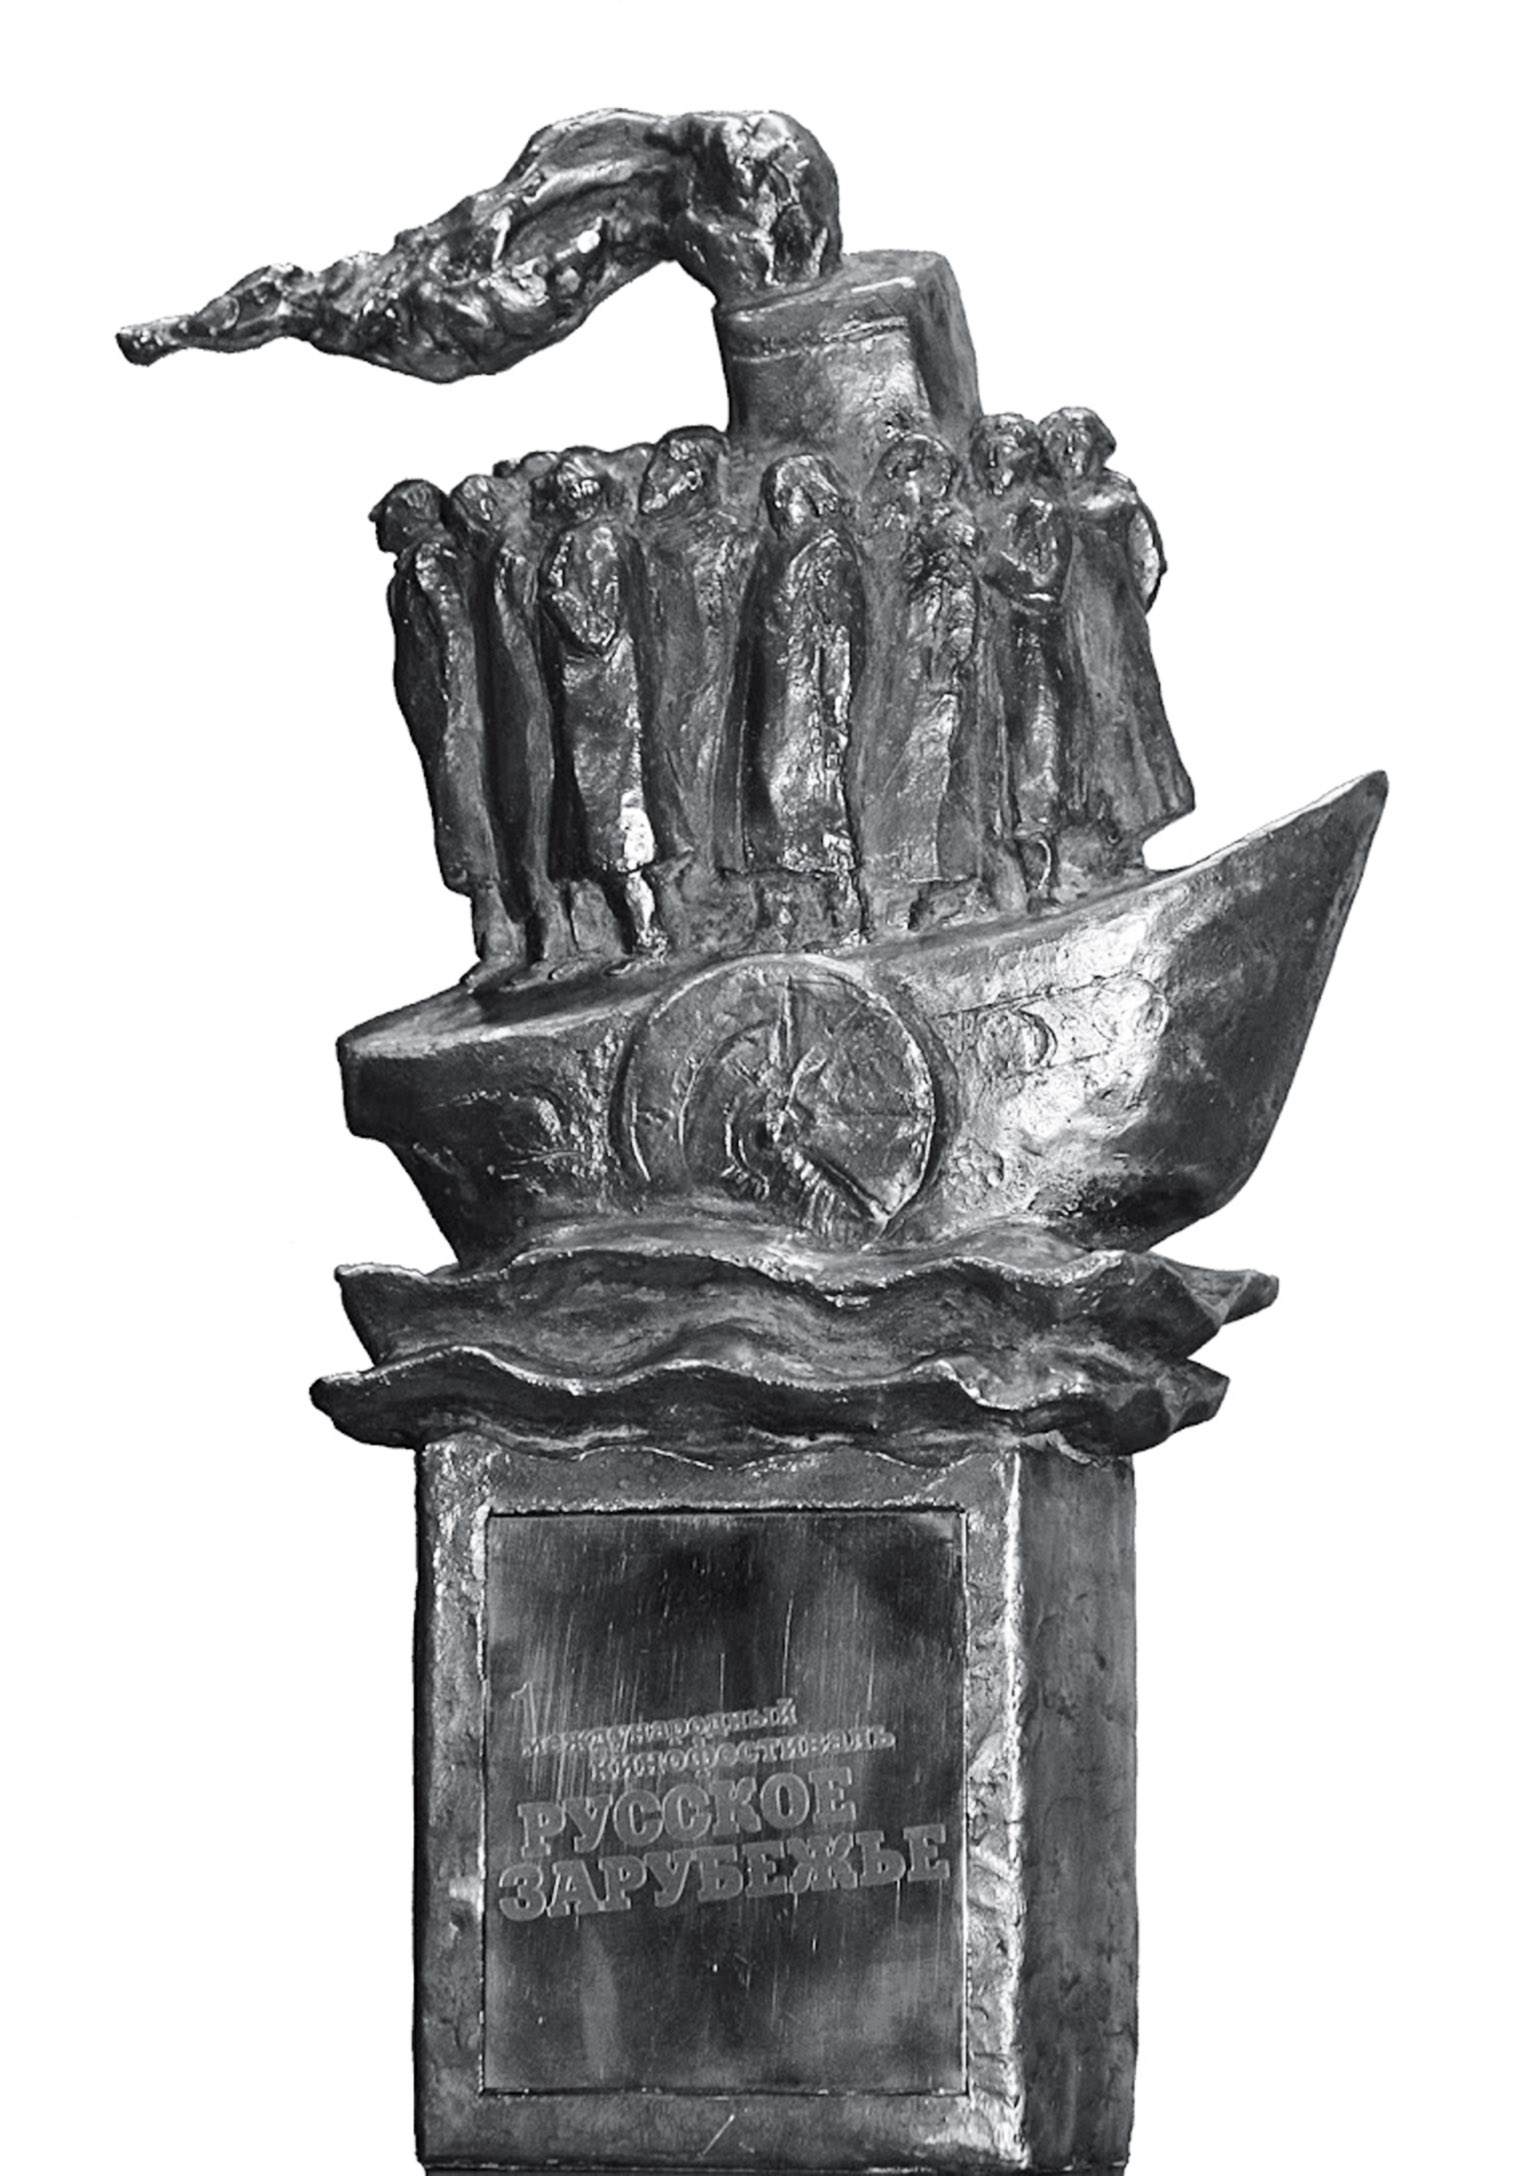 Философский пароход, символ и главный приз кинофестиваля «Русское зарубежье». Скульптор Г. Шилина. 2007 г.